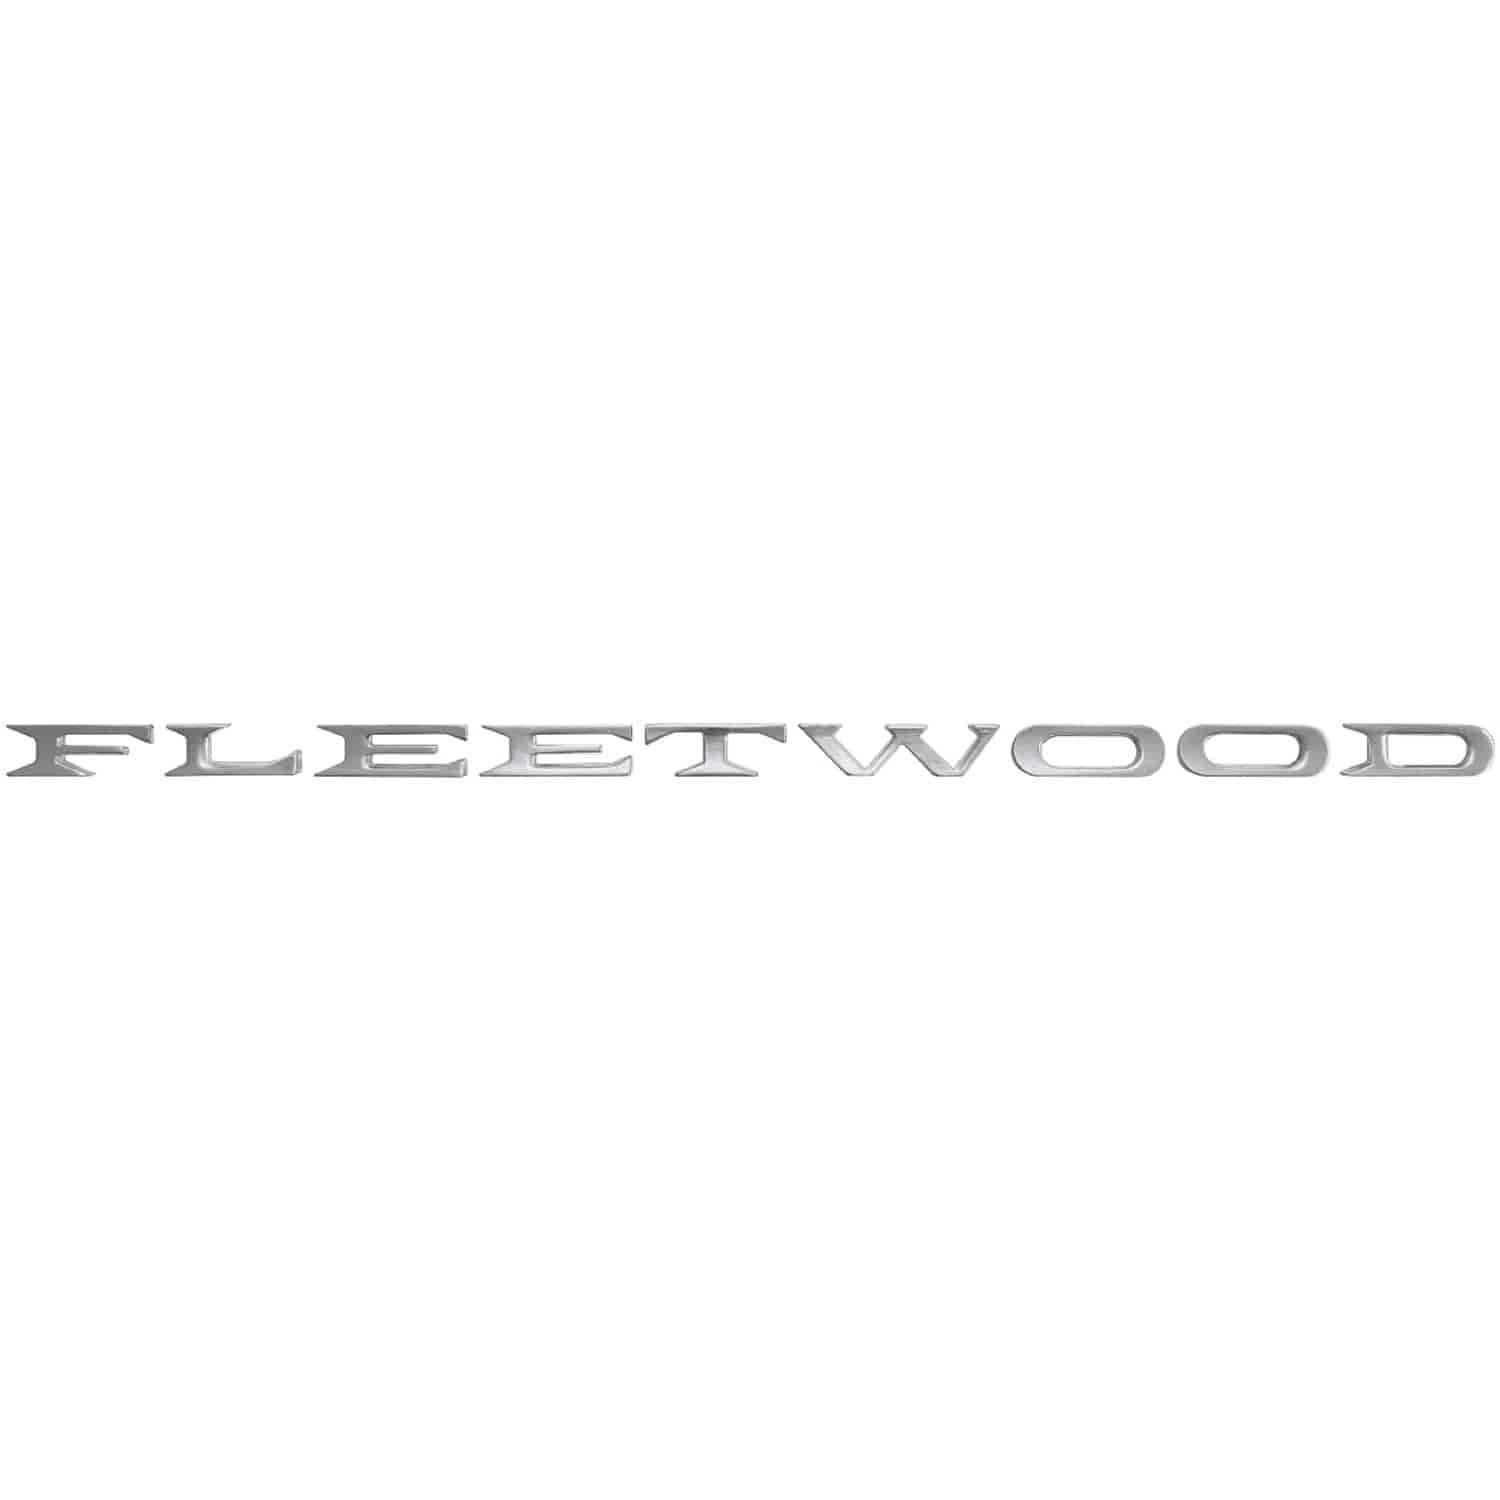 Emblem Fender 1959 Cadillac Fleetwood Letters